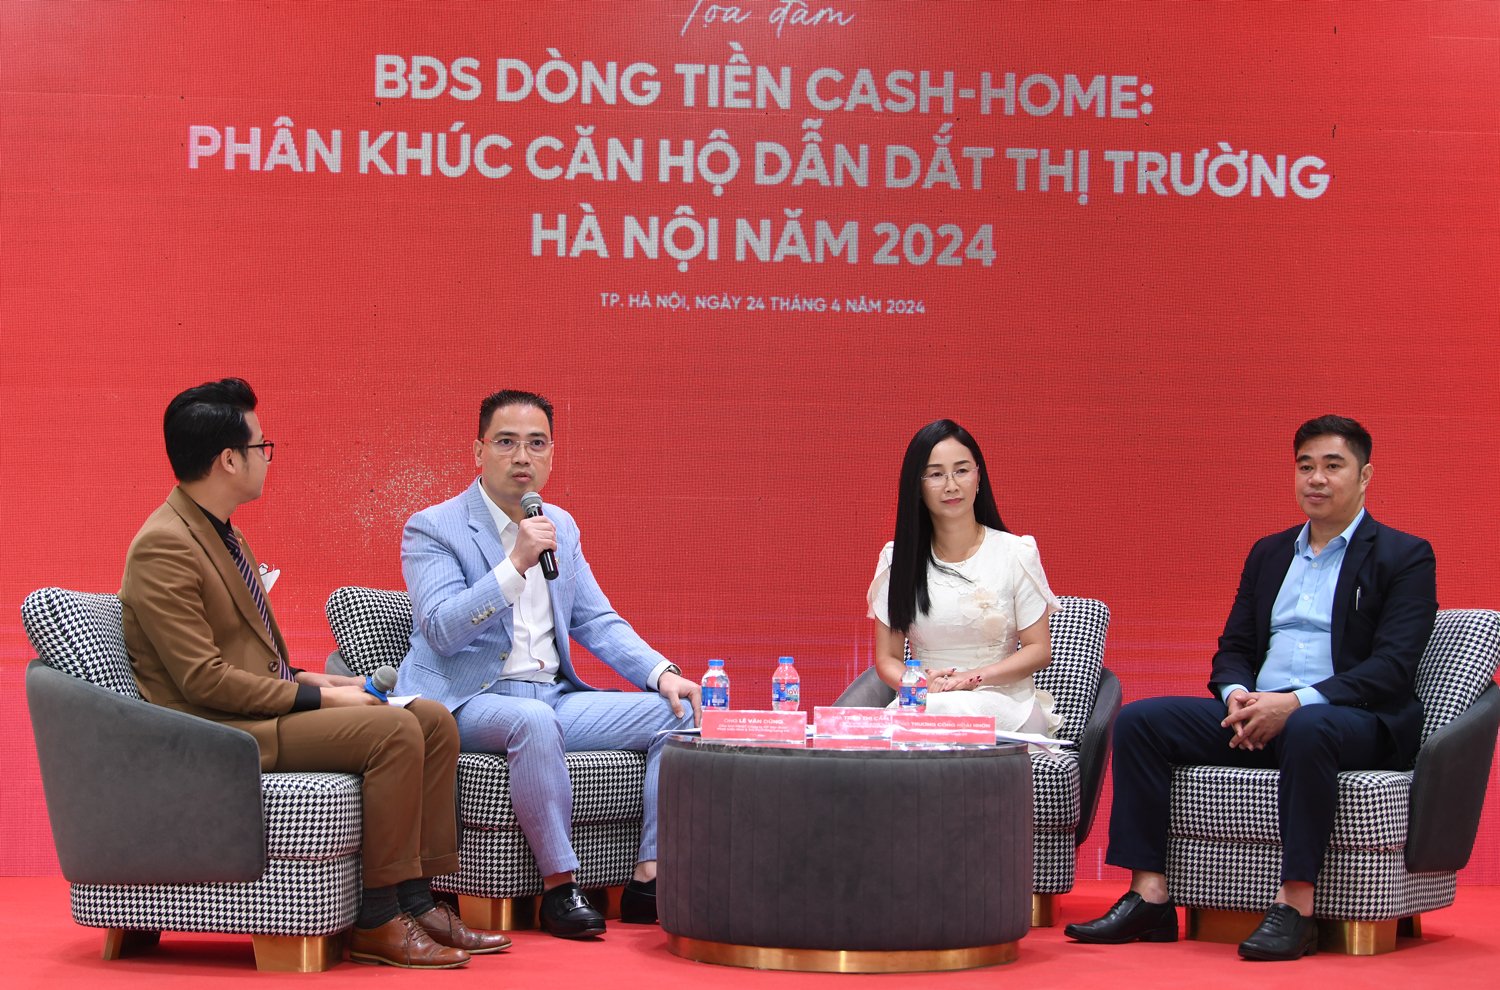 Tọa đàm “Bất động sản dòng tiền Cash-Home: Phân khúc căn hộ dẫn dắt thị trường Hà Nội năm 2024”